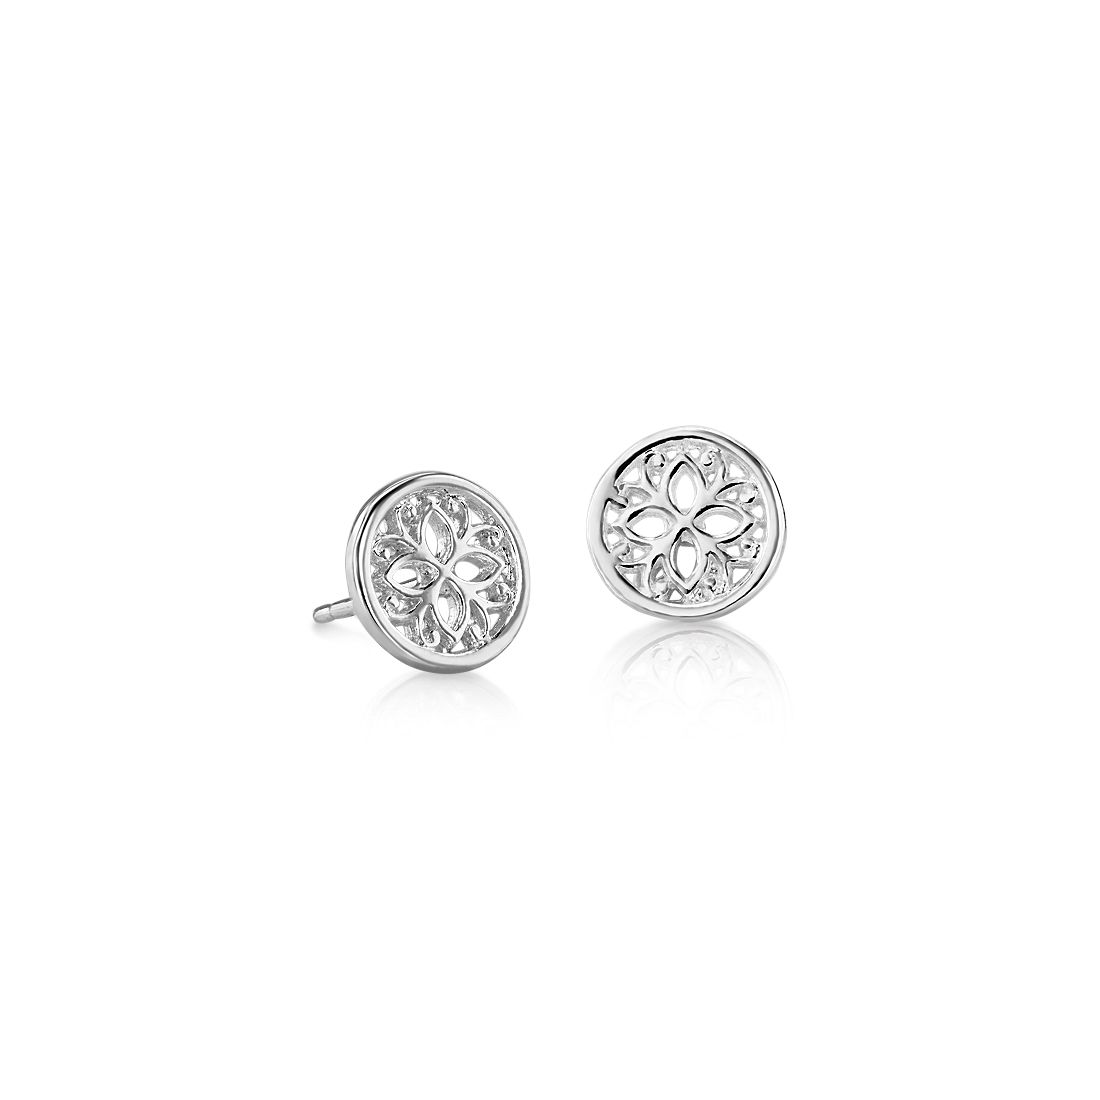 Petite Geometric Floral Stud Earrings in Sterling Silver